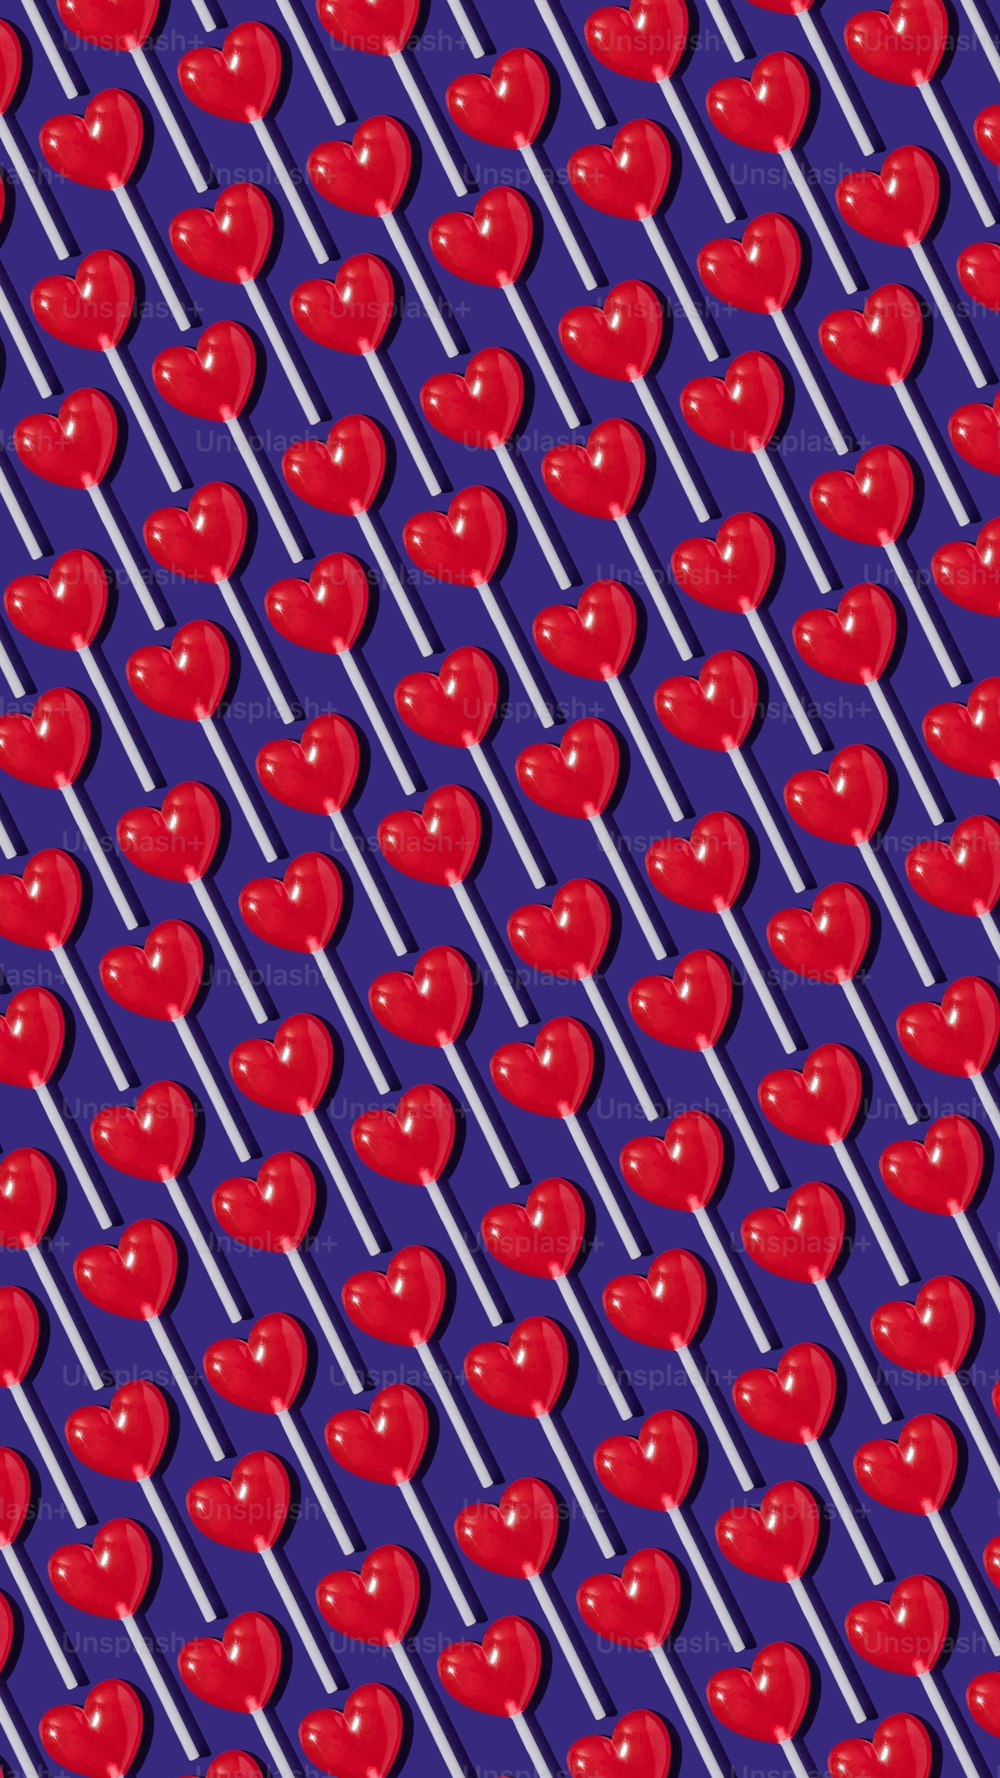 ein Muster aus roten Äpfeln auf violettem Hintergrund